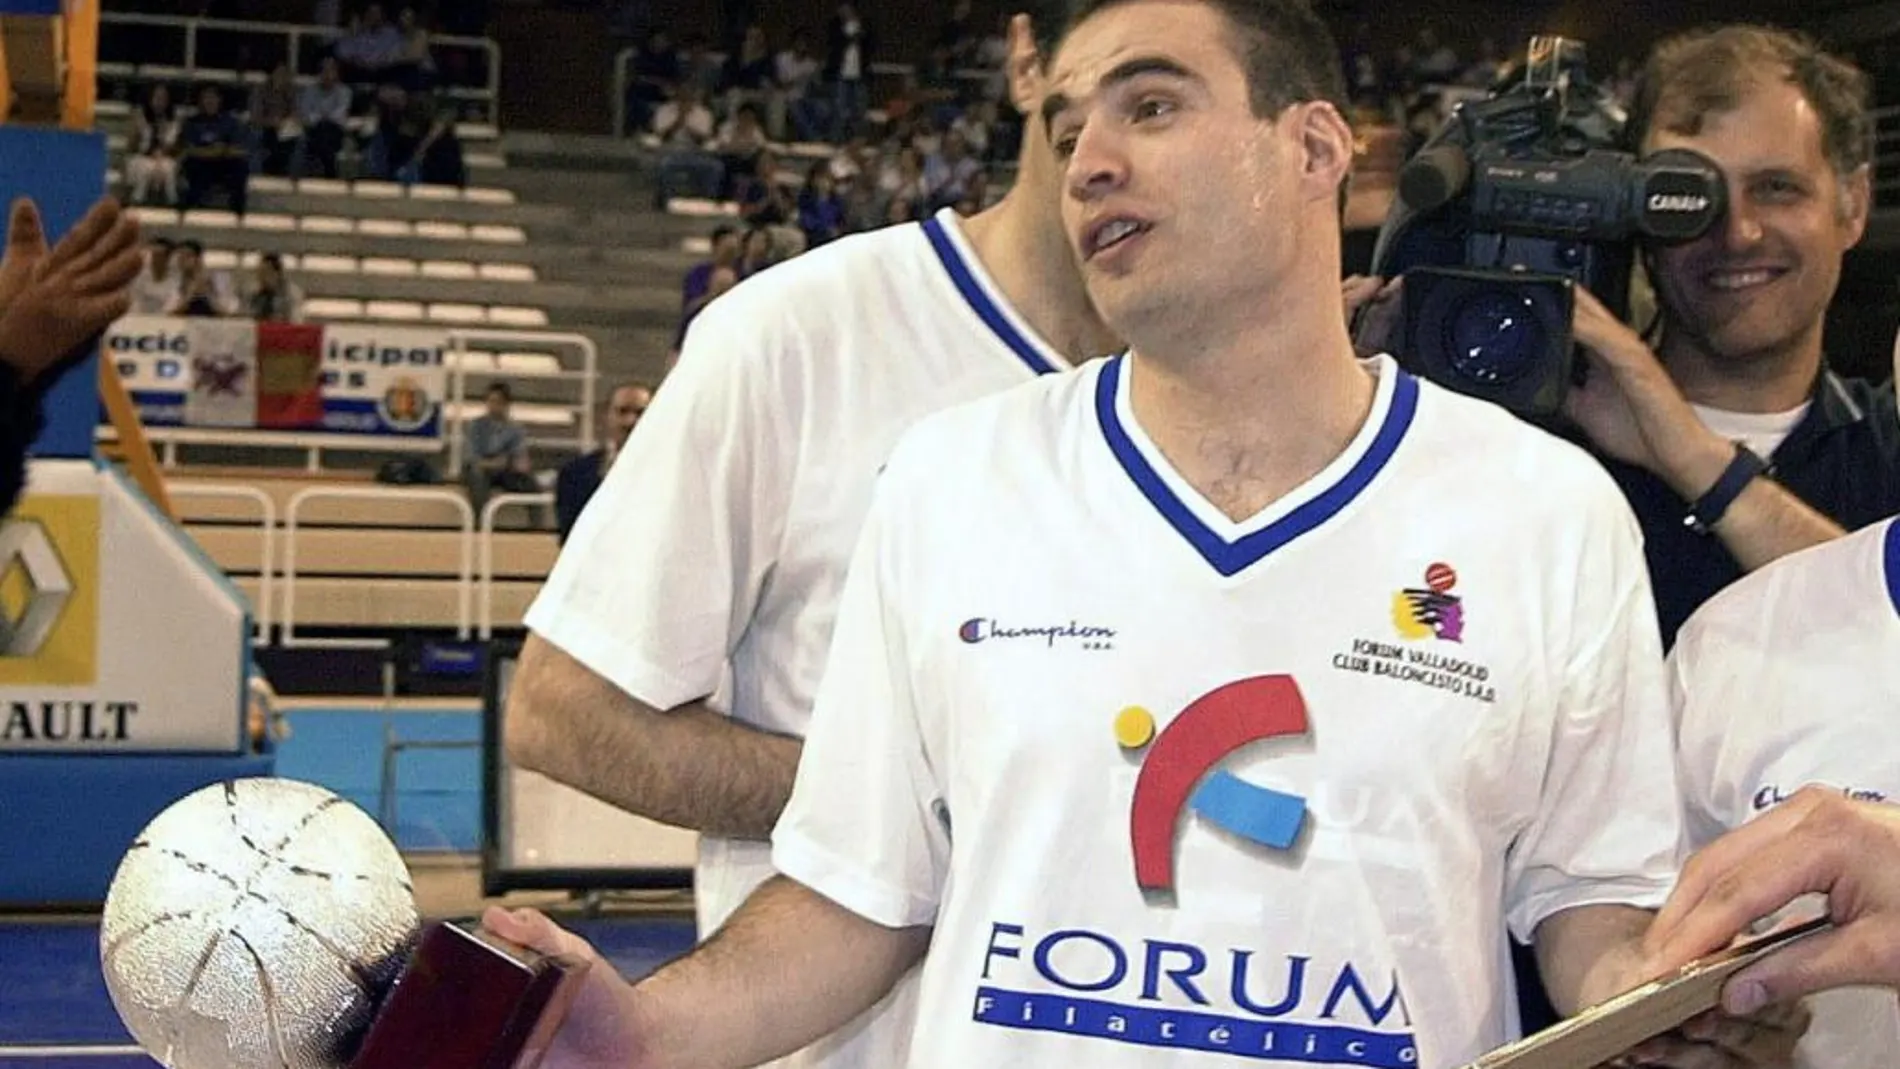 Fotografía de archivo tomada el 25/05/2001 del ex jugador de baloncesto del Fórum Filatélico Lalo García